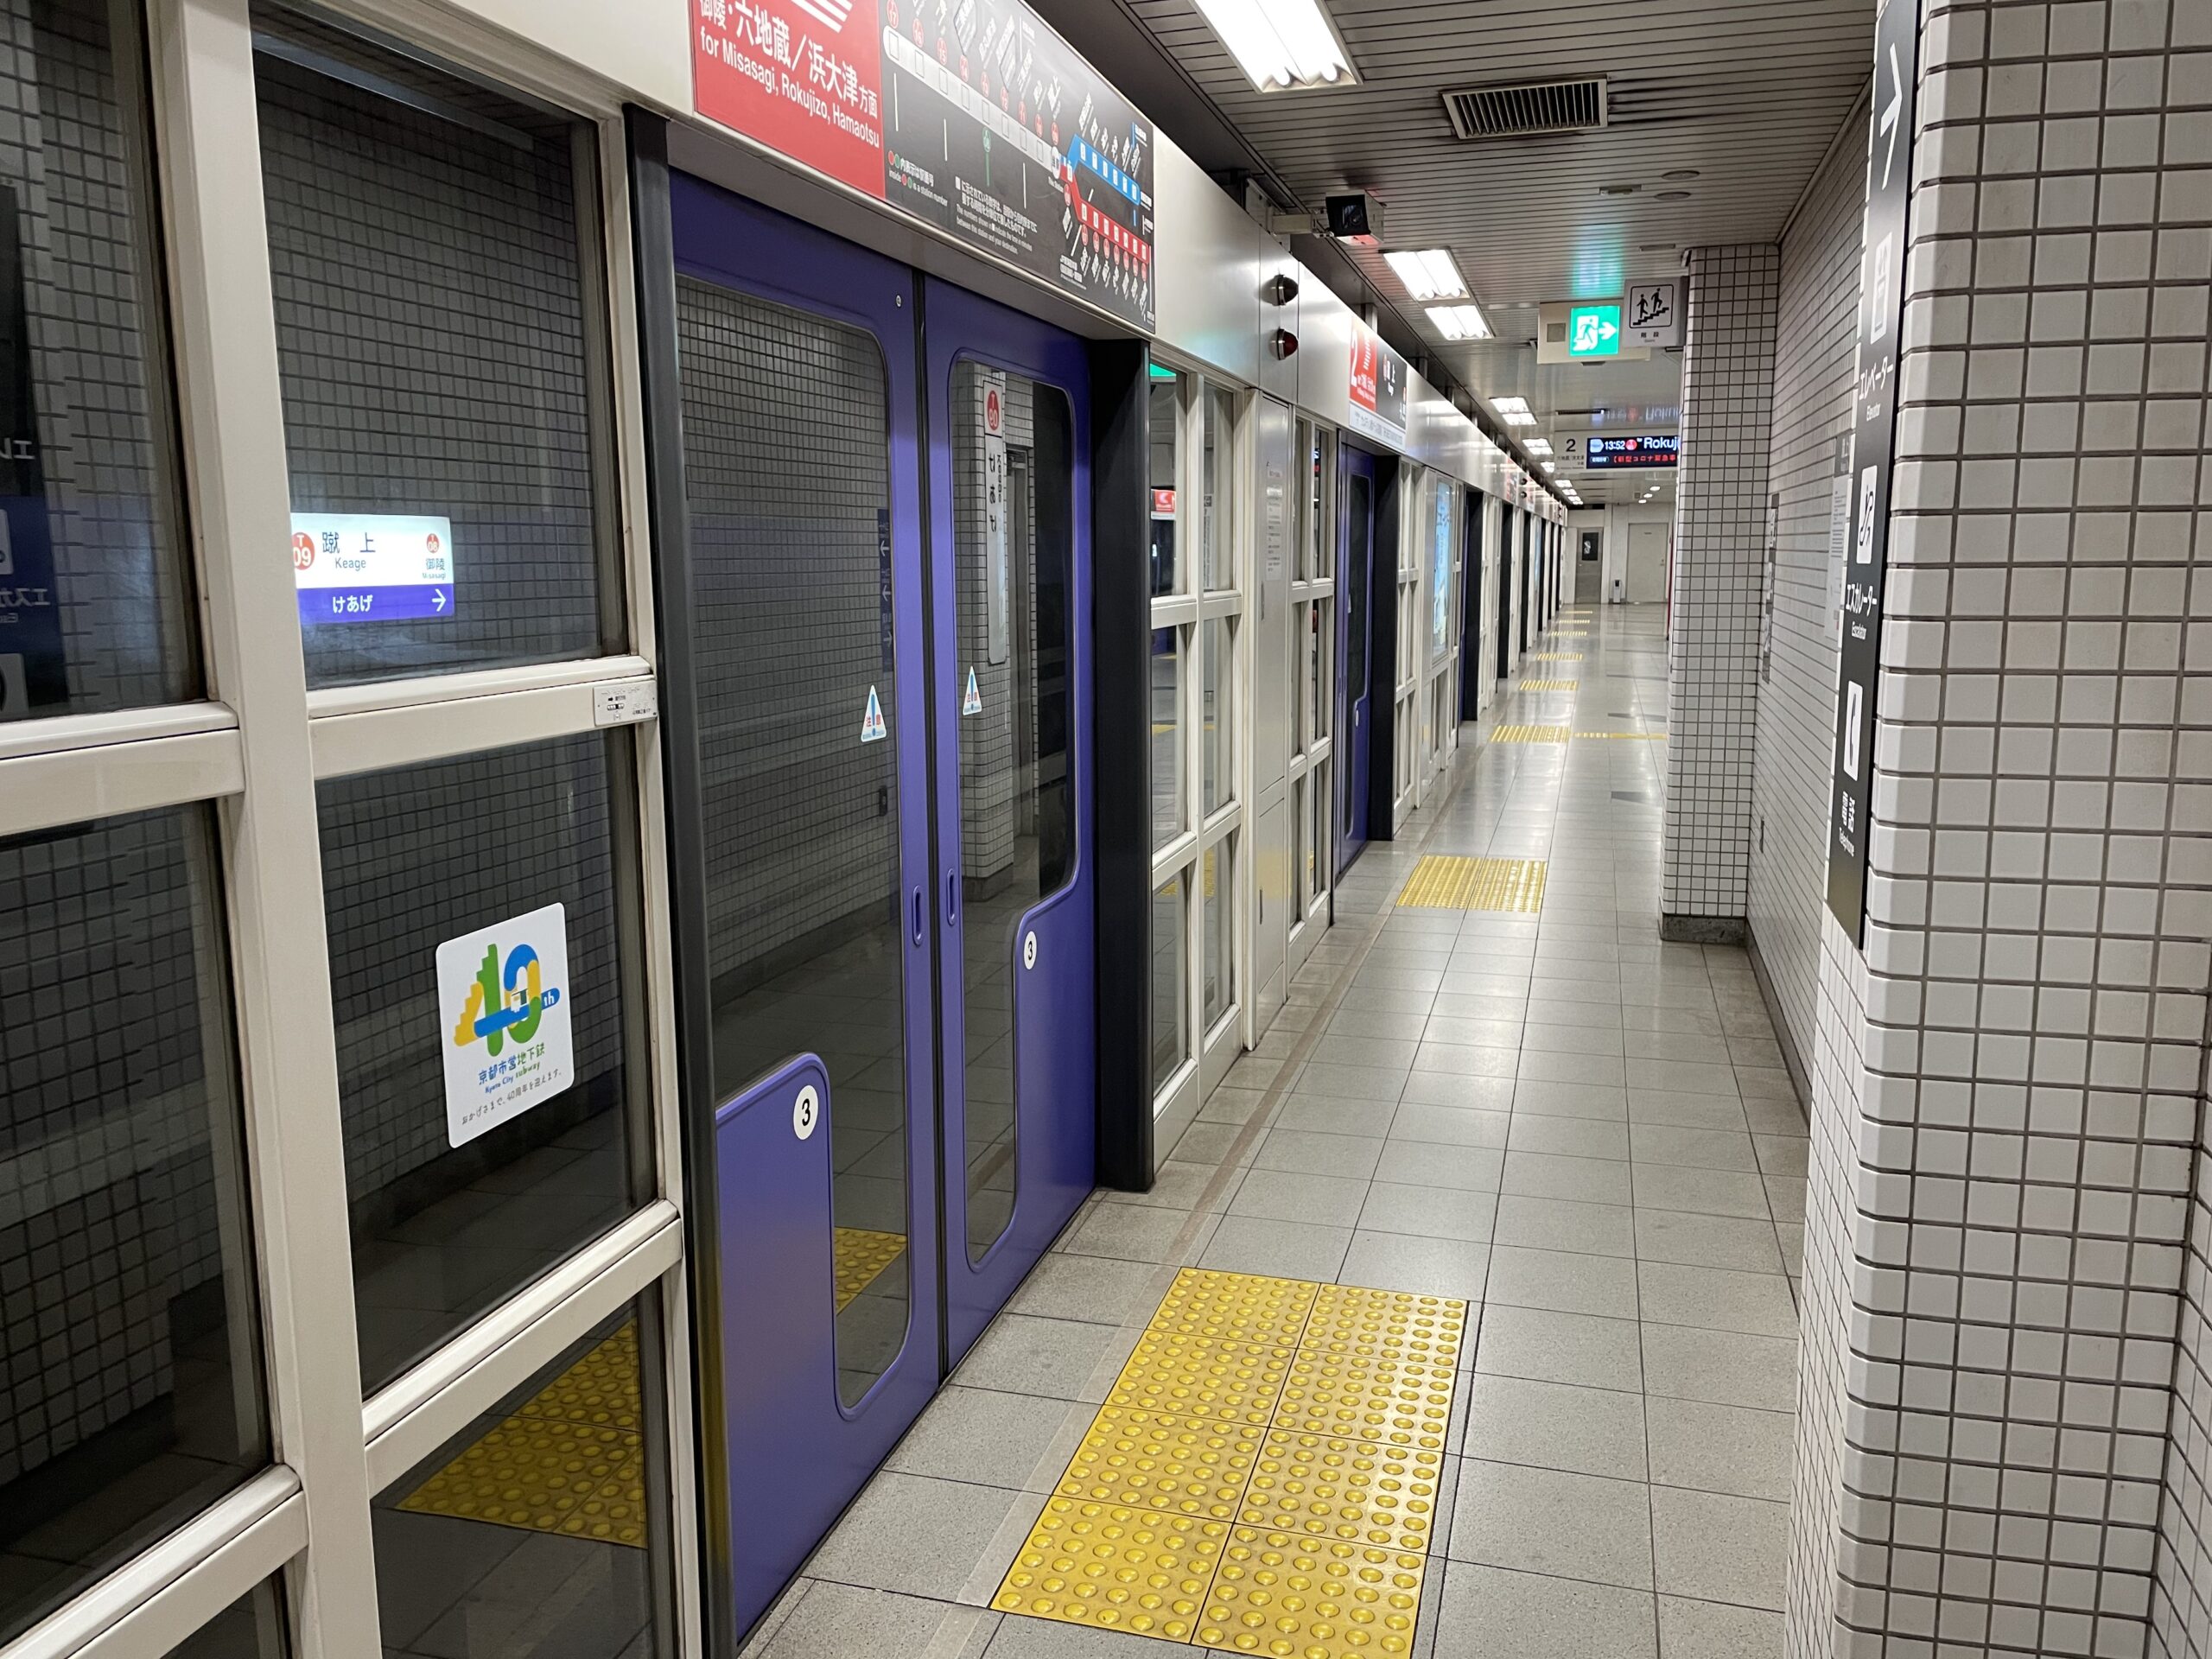 京都市 地下鉄 烏丸線 東西線 利用時に間違えやすい 注意点 と乗降に便利な ドアちか とは 京都観光 ふろくどころ